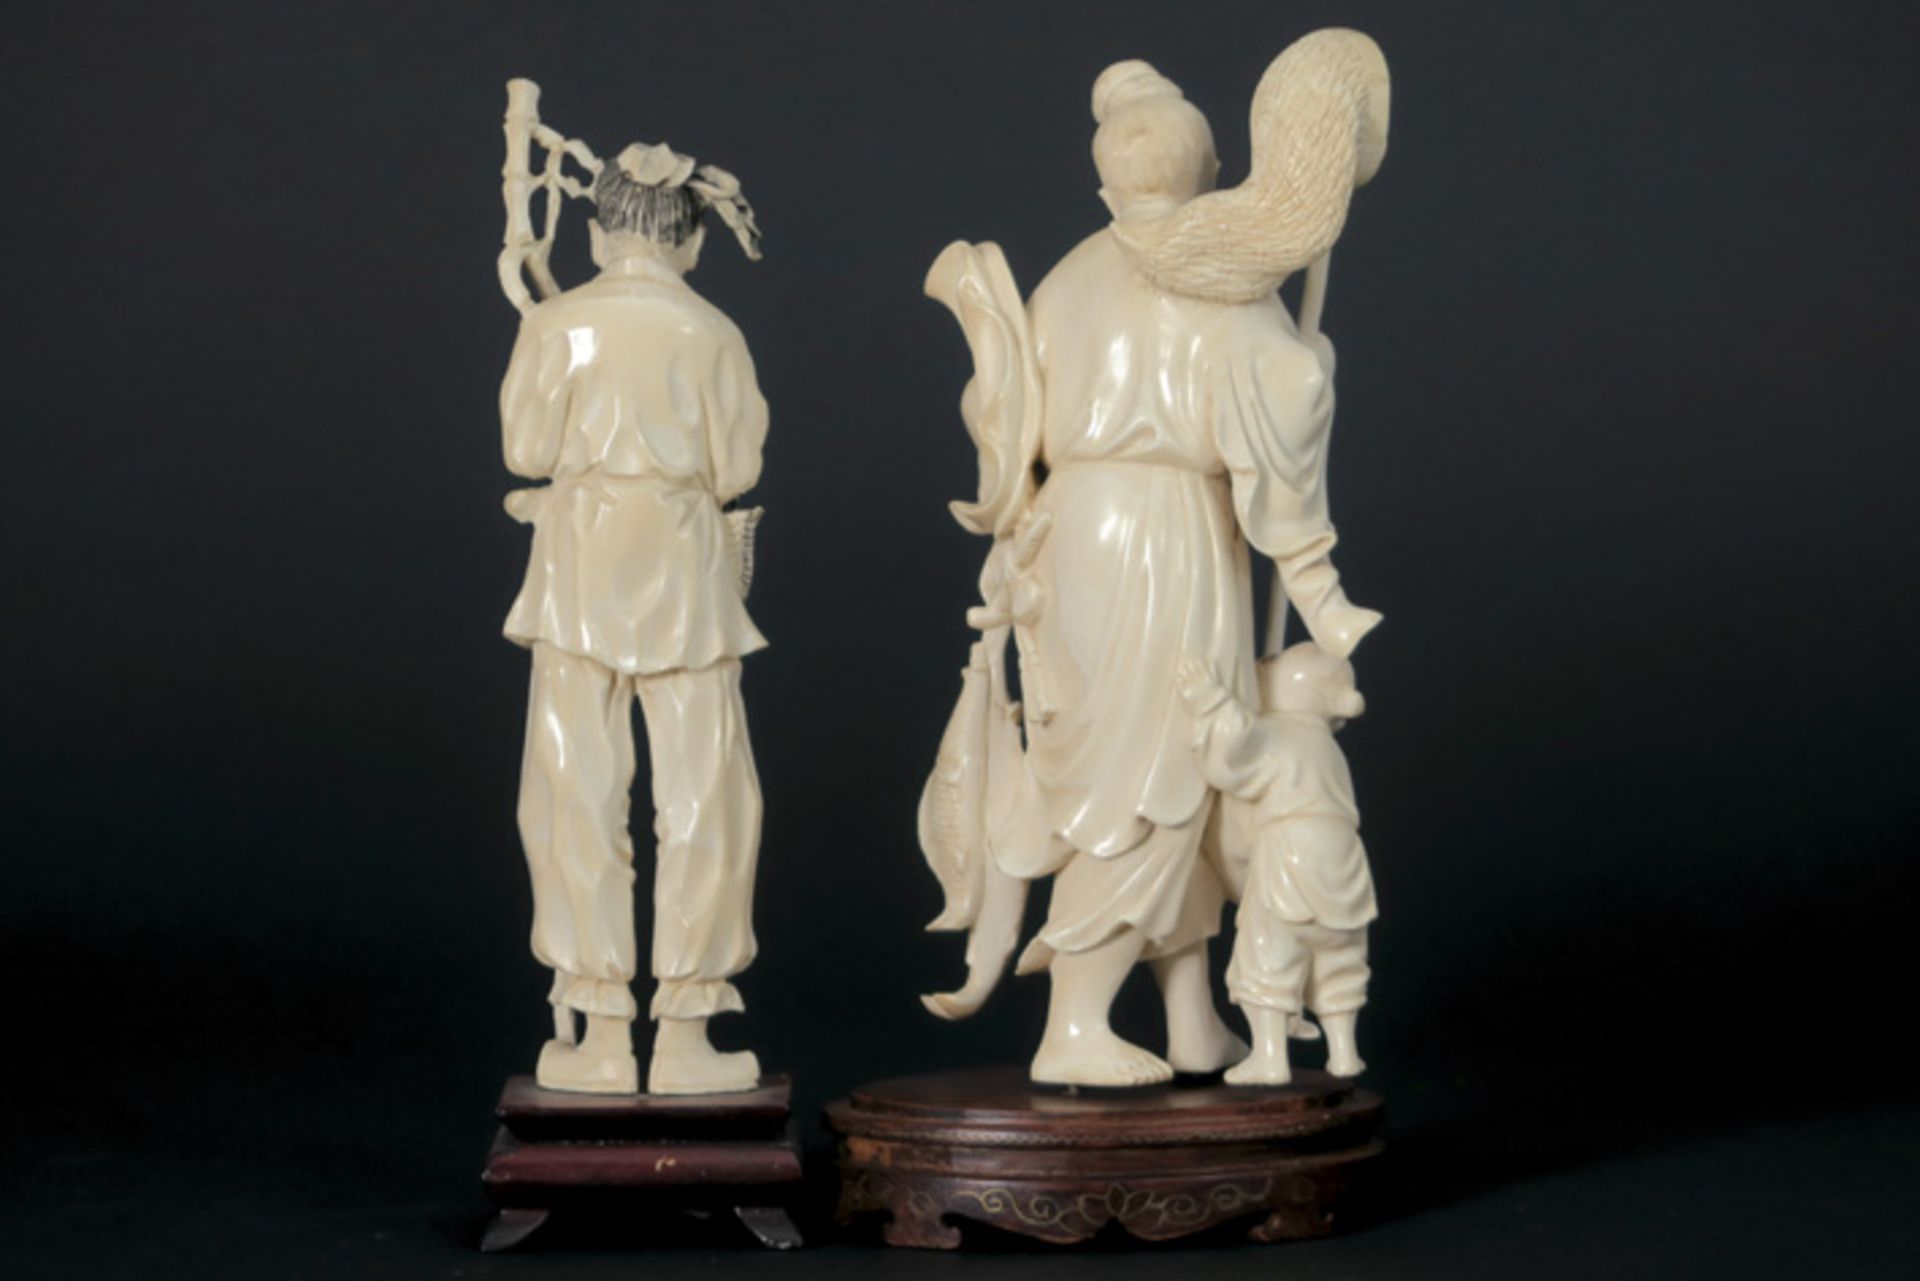 Lot van twee Chinese sculpturen in ivoor : "Man met staf" en "Visser met kind" - hoogtes : 18 en - Bild 2 aus 2